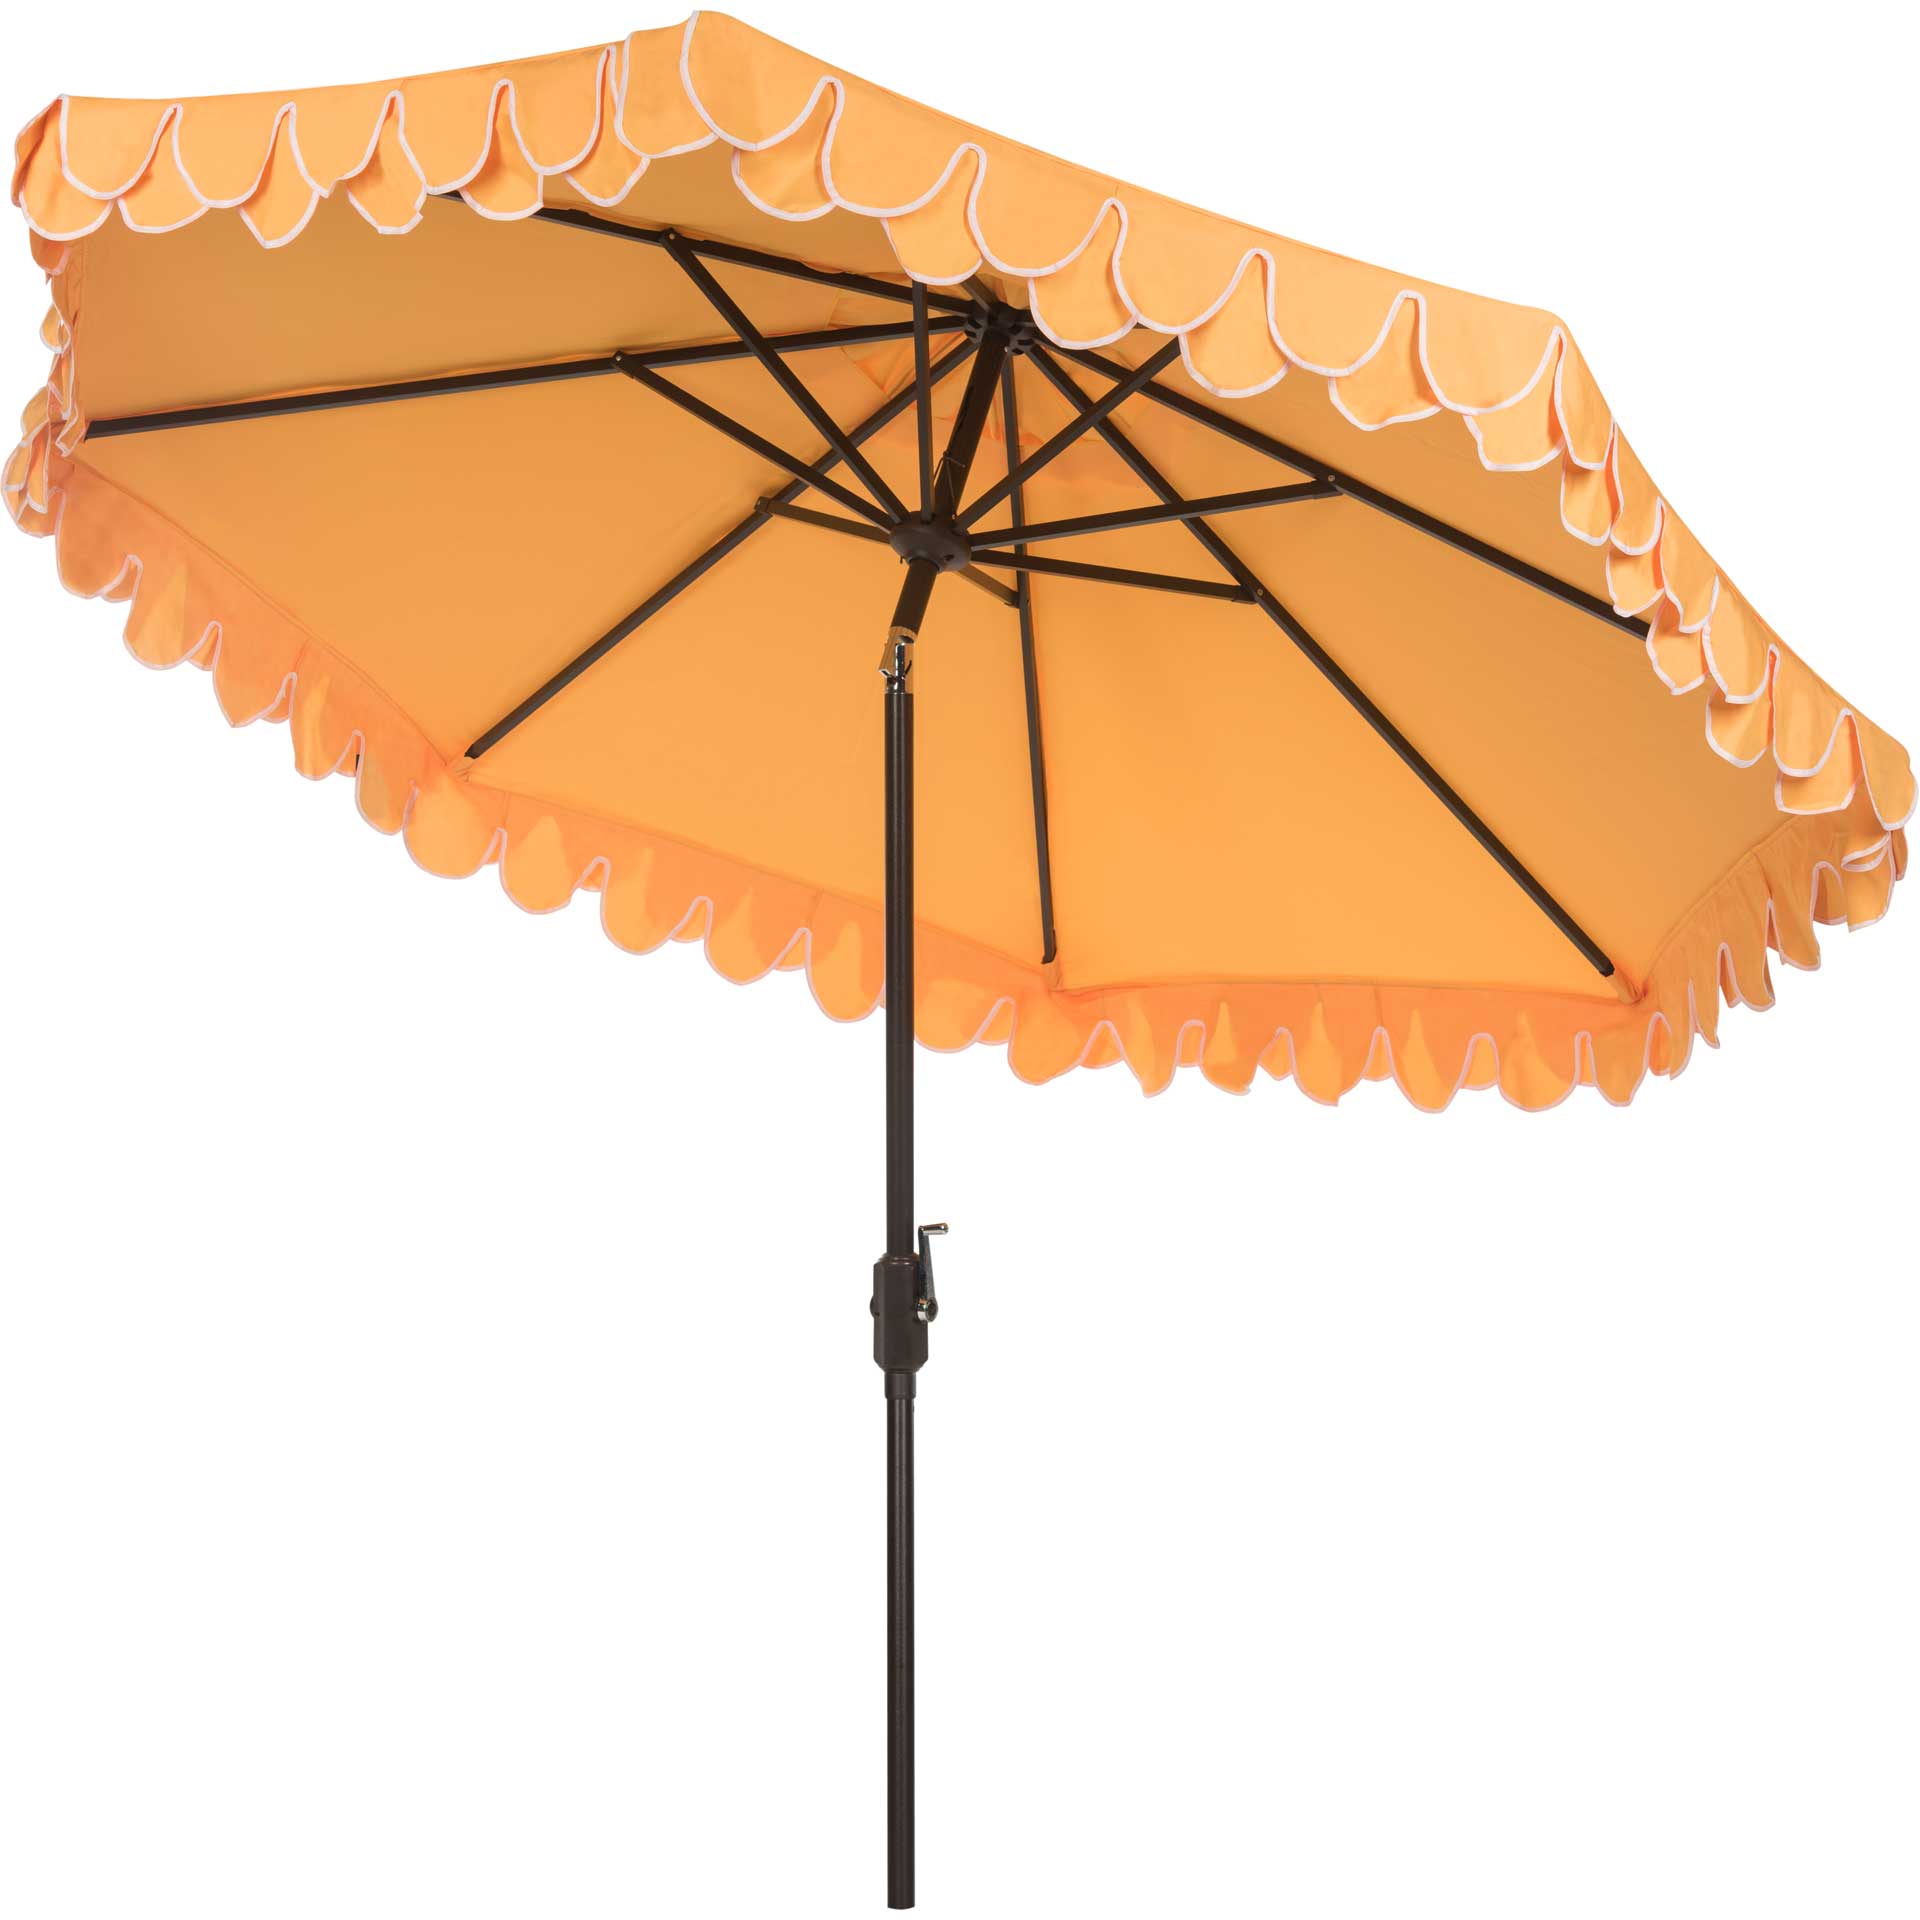 Electra Uv Resistant Auto Tilt Umbrella Yellow/White